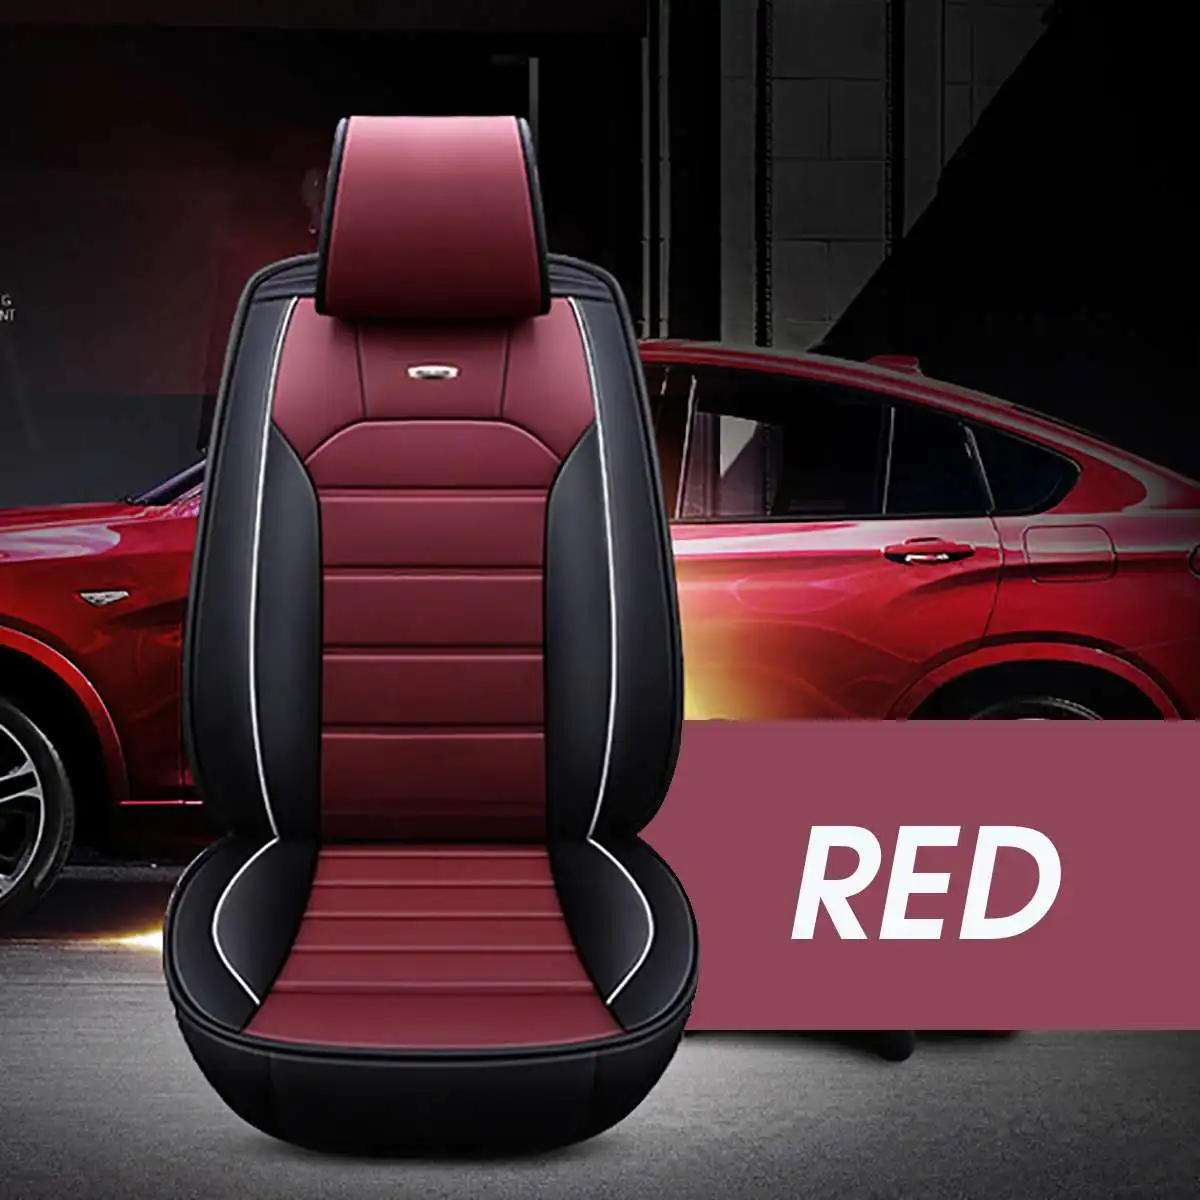 5D полный объемный передний PU кожаный чехол для сиденья автомобиля удобное автомобильное роскошное сиденье Чехлы Подушка